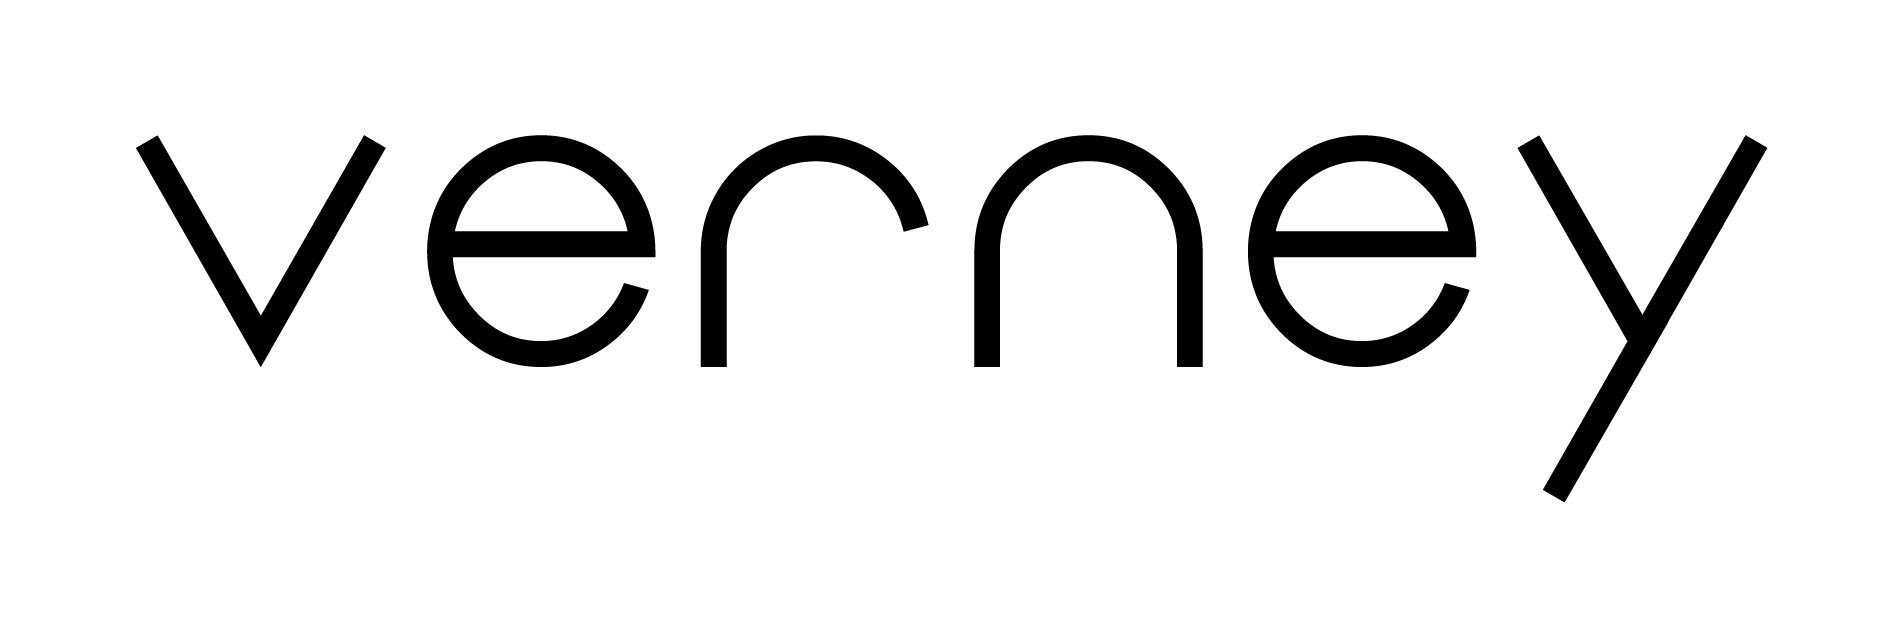 verney logo